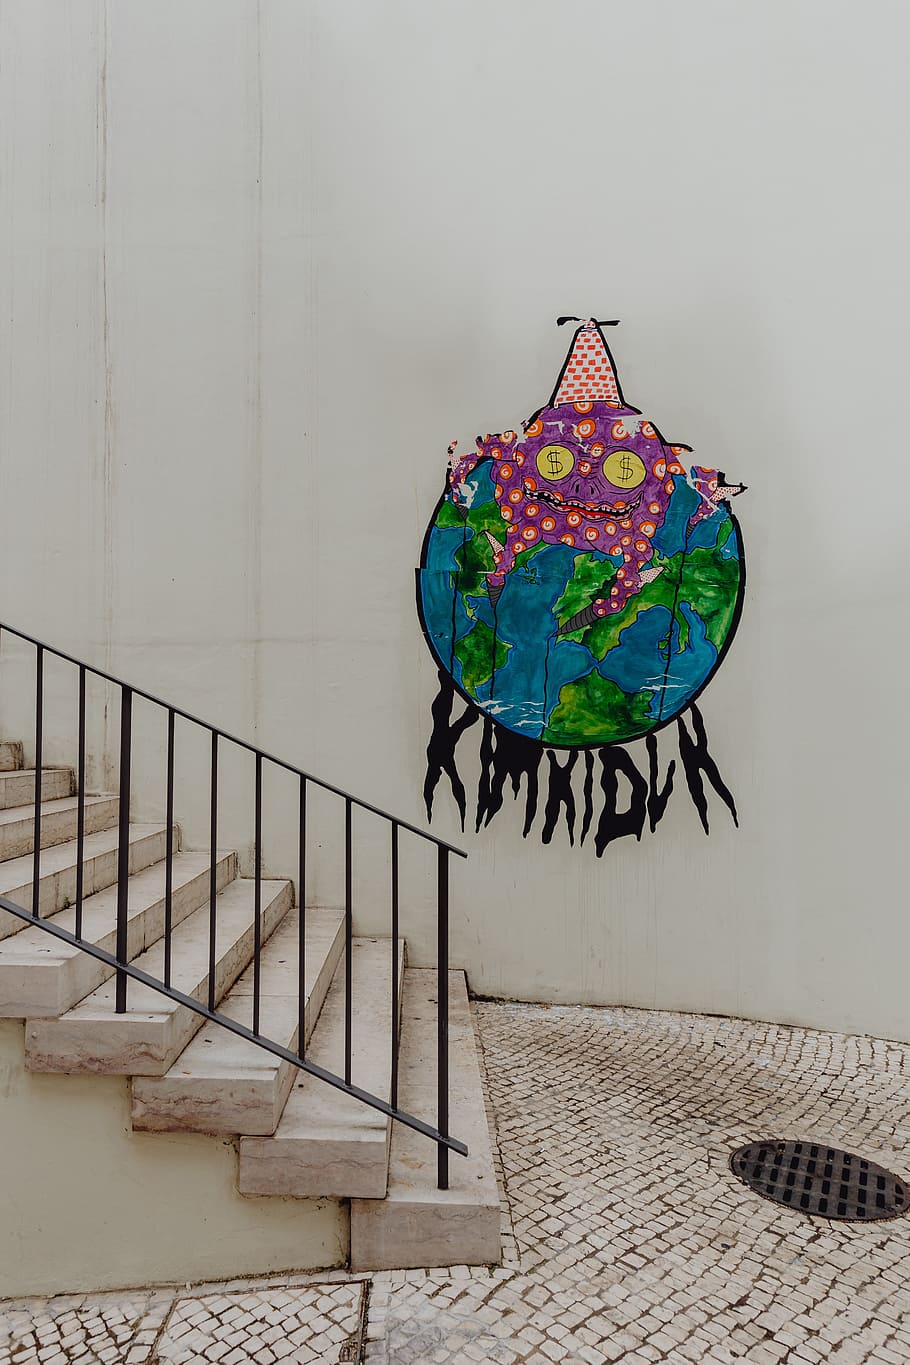 lisboa street art, portugal, arte, street art, Europa, lisboa, Característica del edificio de la pared, arquitectura, barandilla, ninguna persona